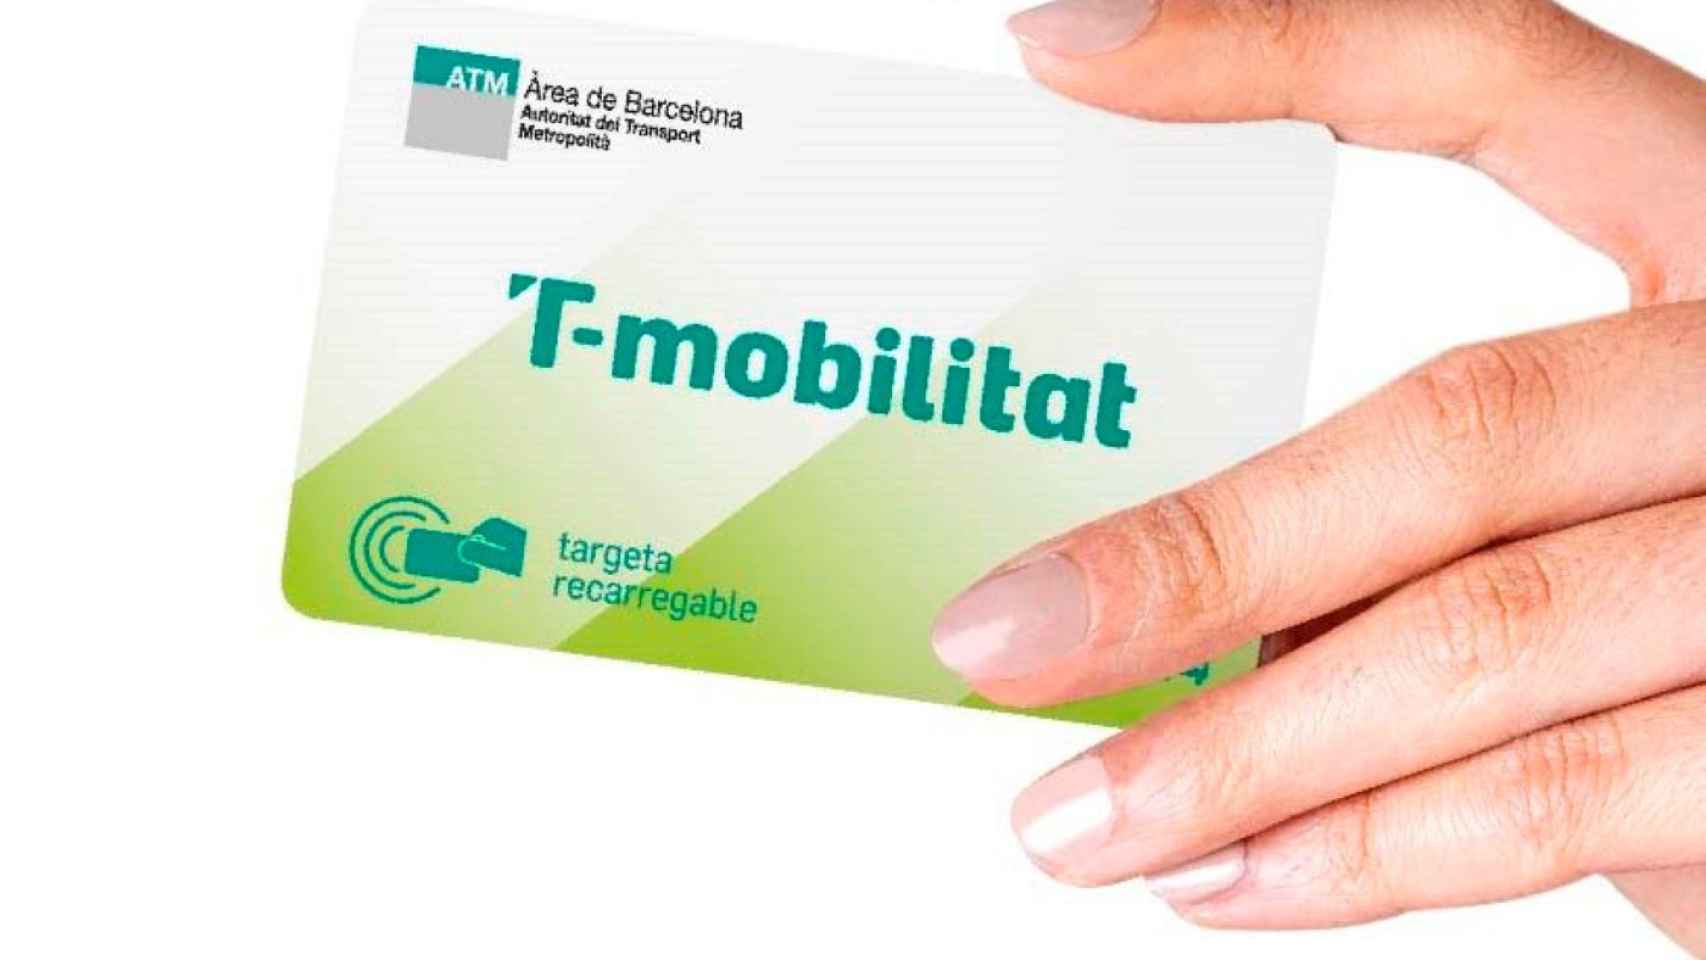 La tarjeta de cartón de la T-Mobilitat en una imagen de archivo